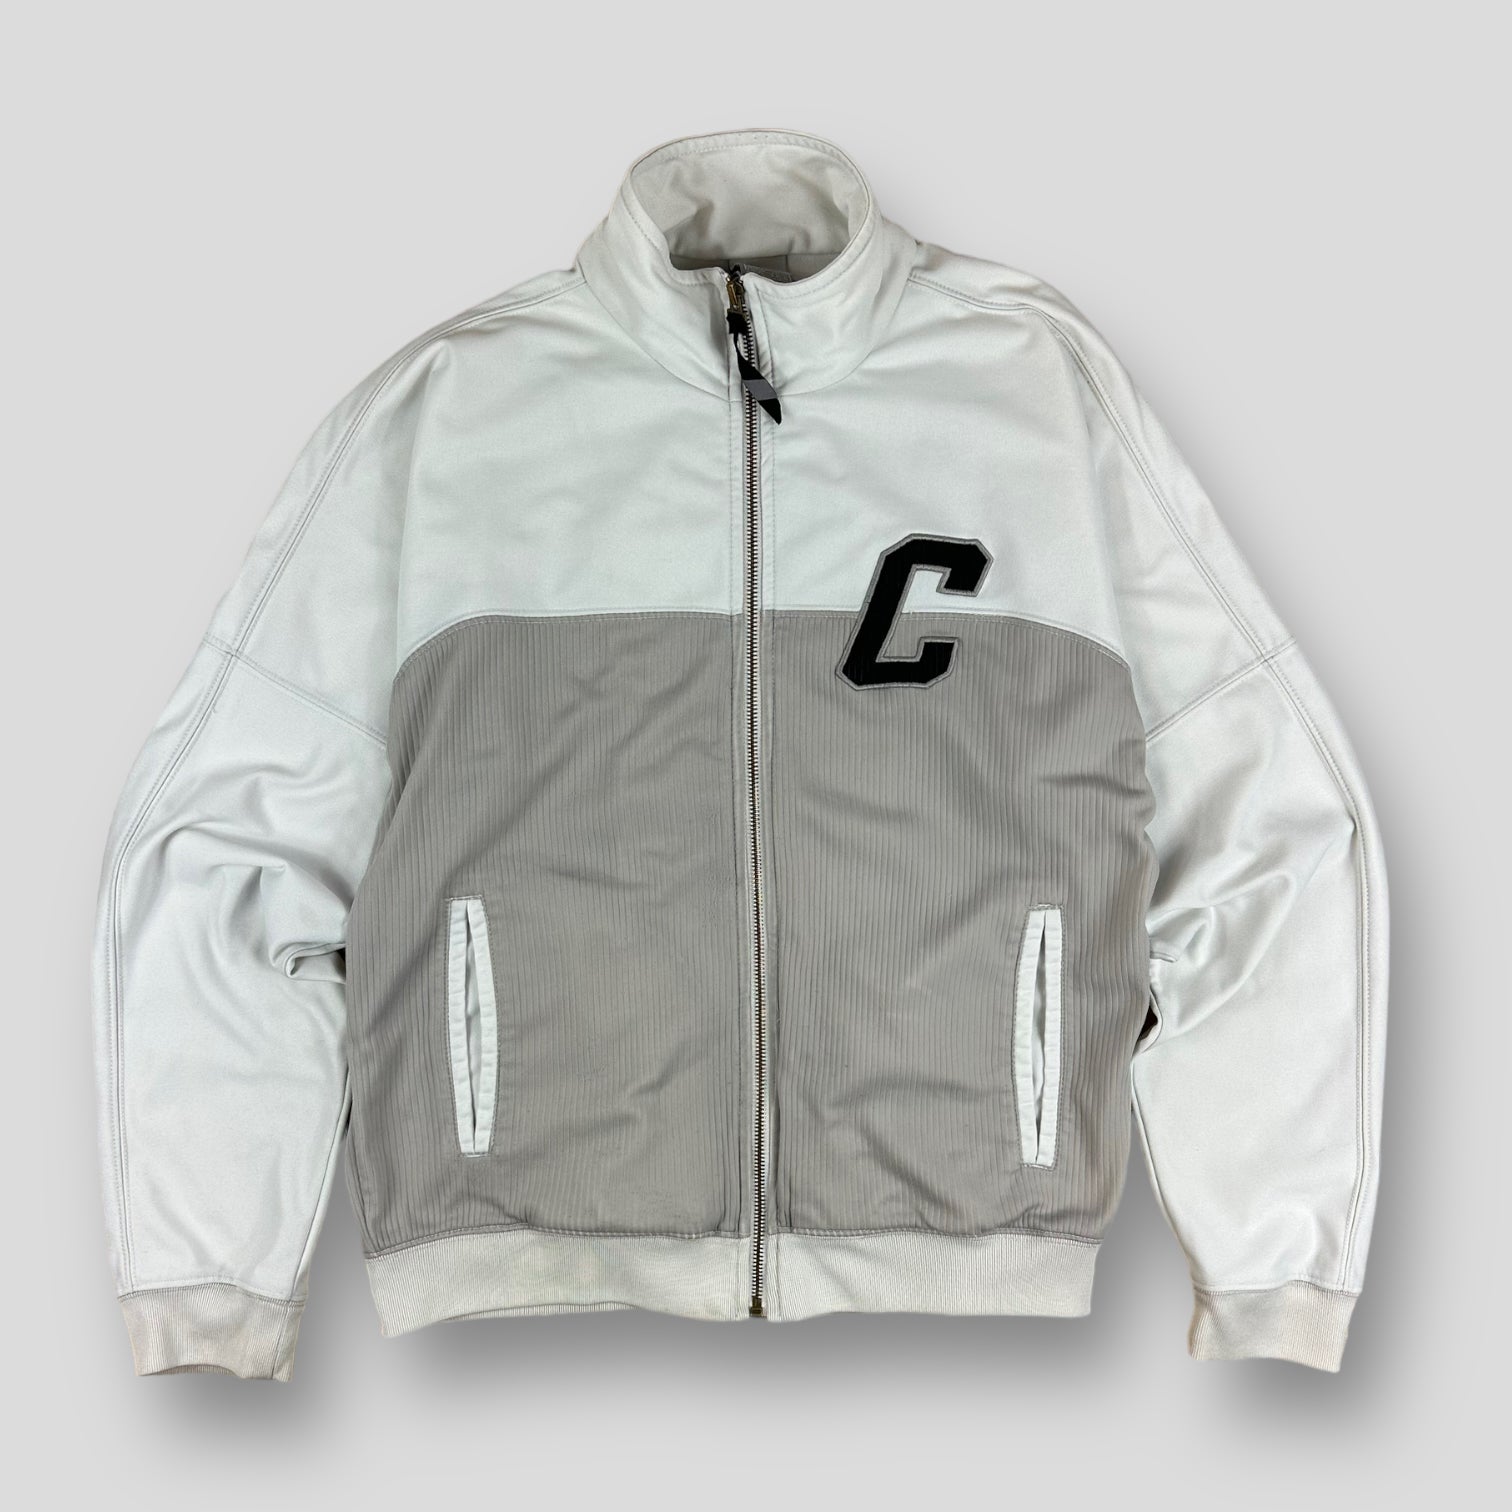 Nike Cortez jacket